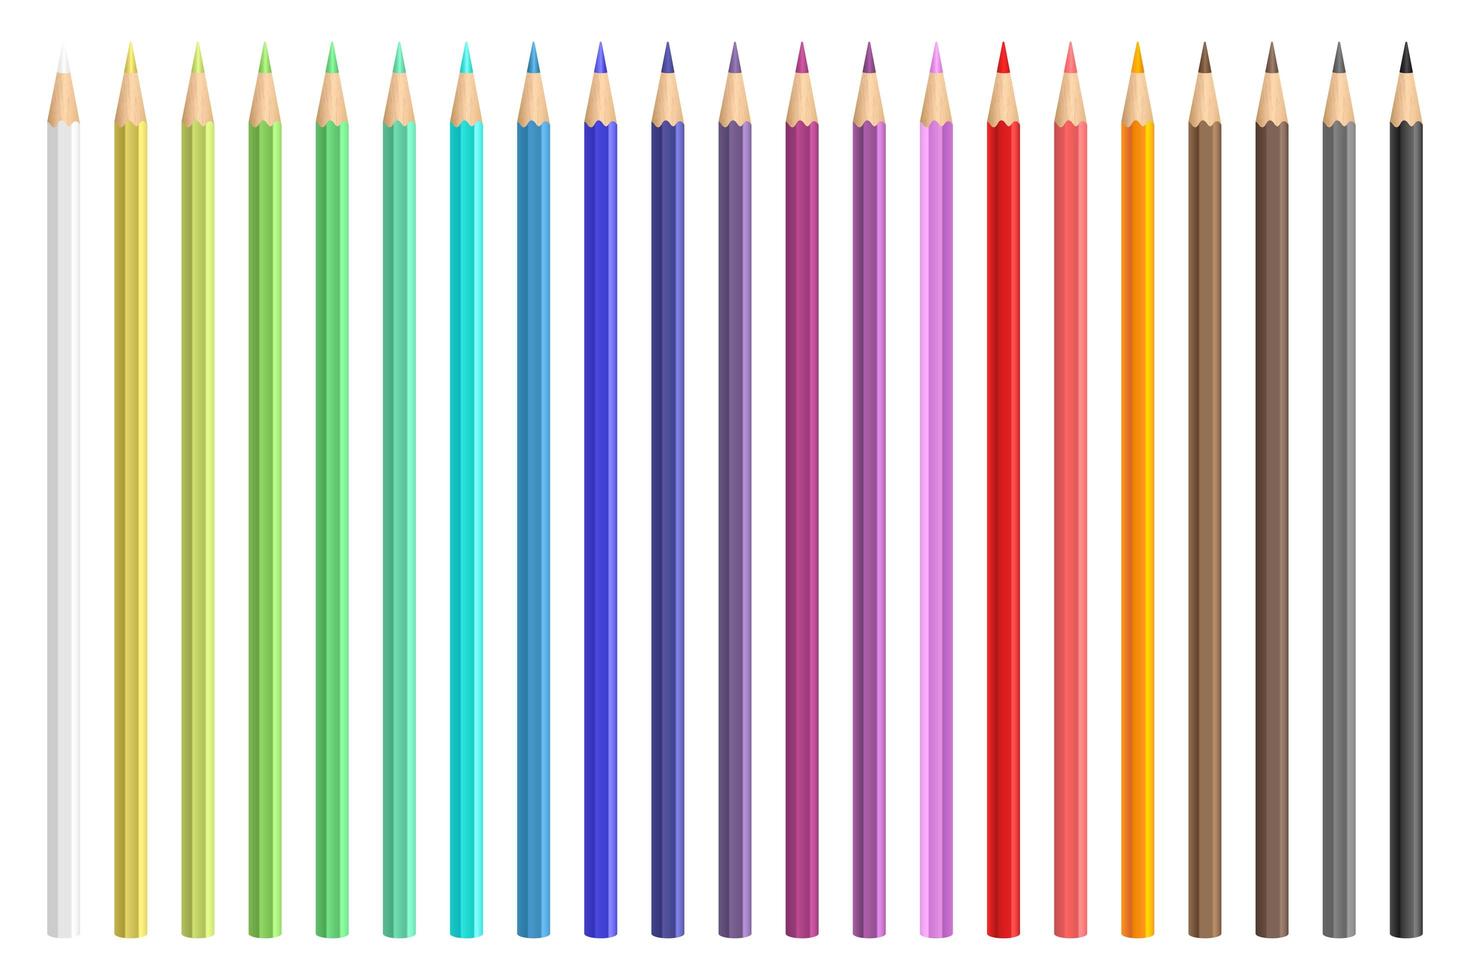 lápis de cor desenho vetorial ilustração isolado no fundo branco vetor